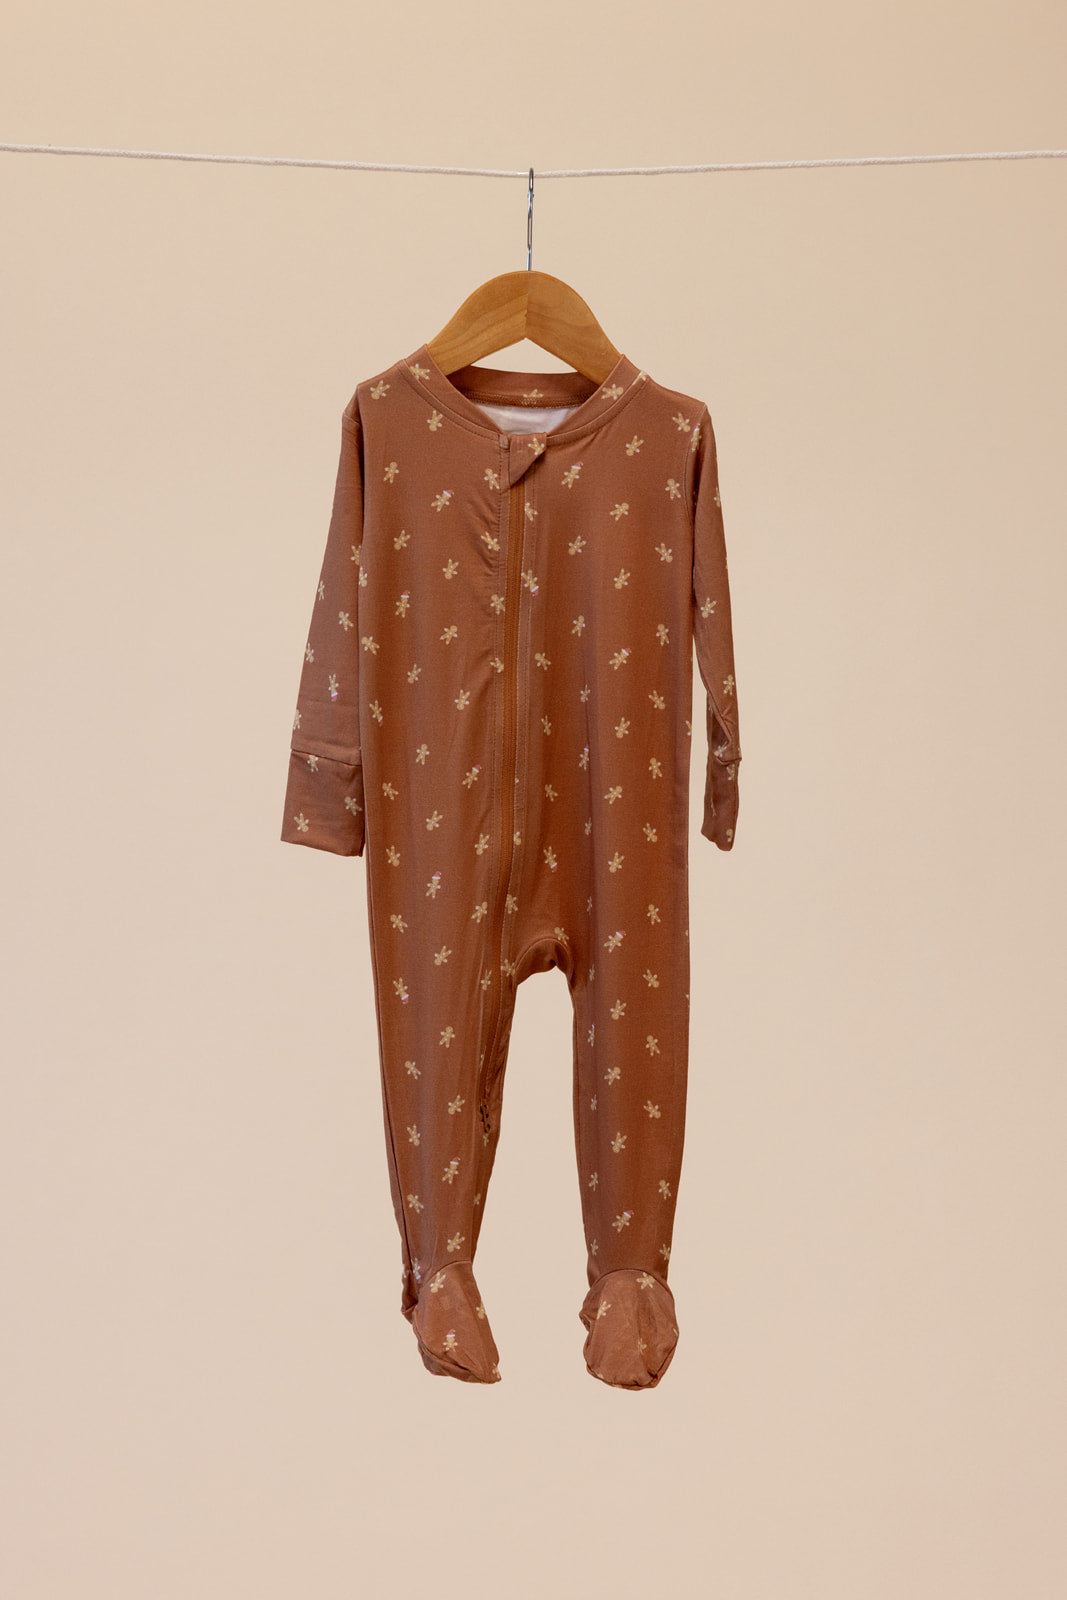 Ralphie - CloudBlend™ Footed Pajamas